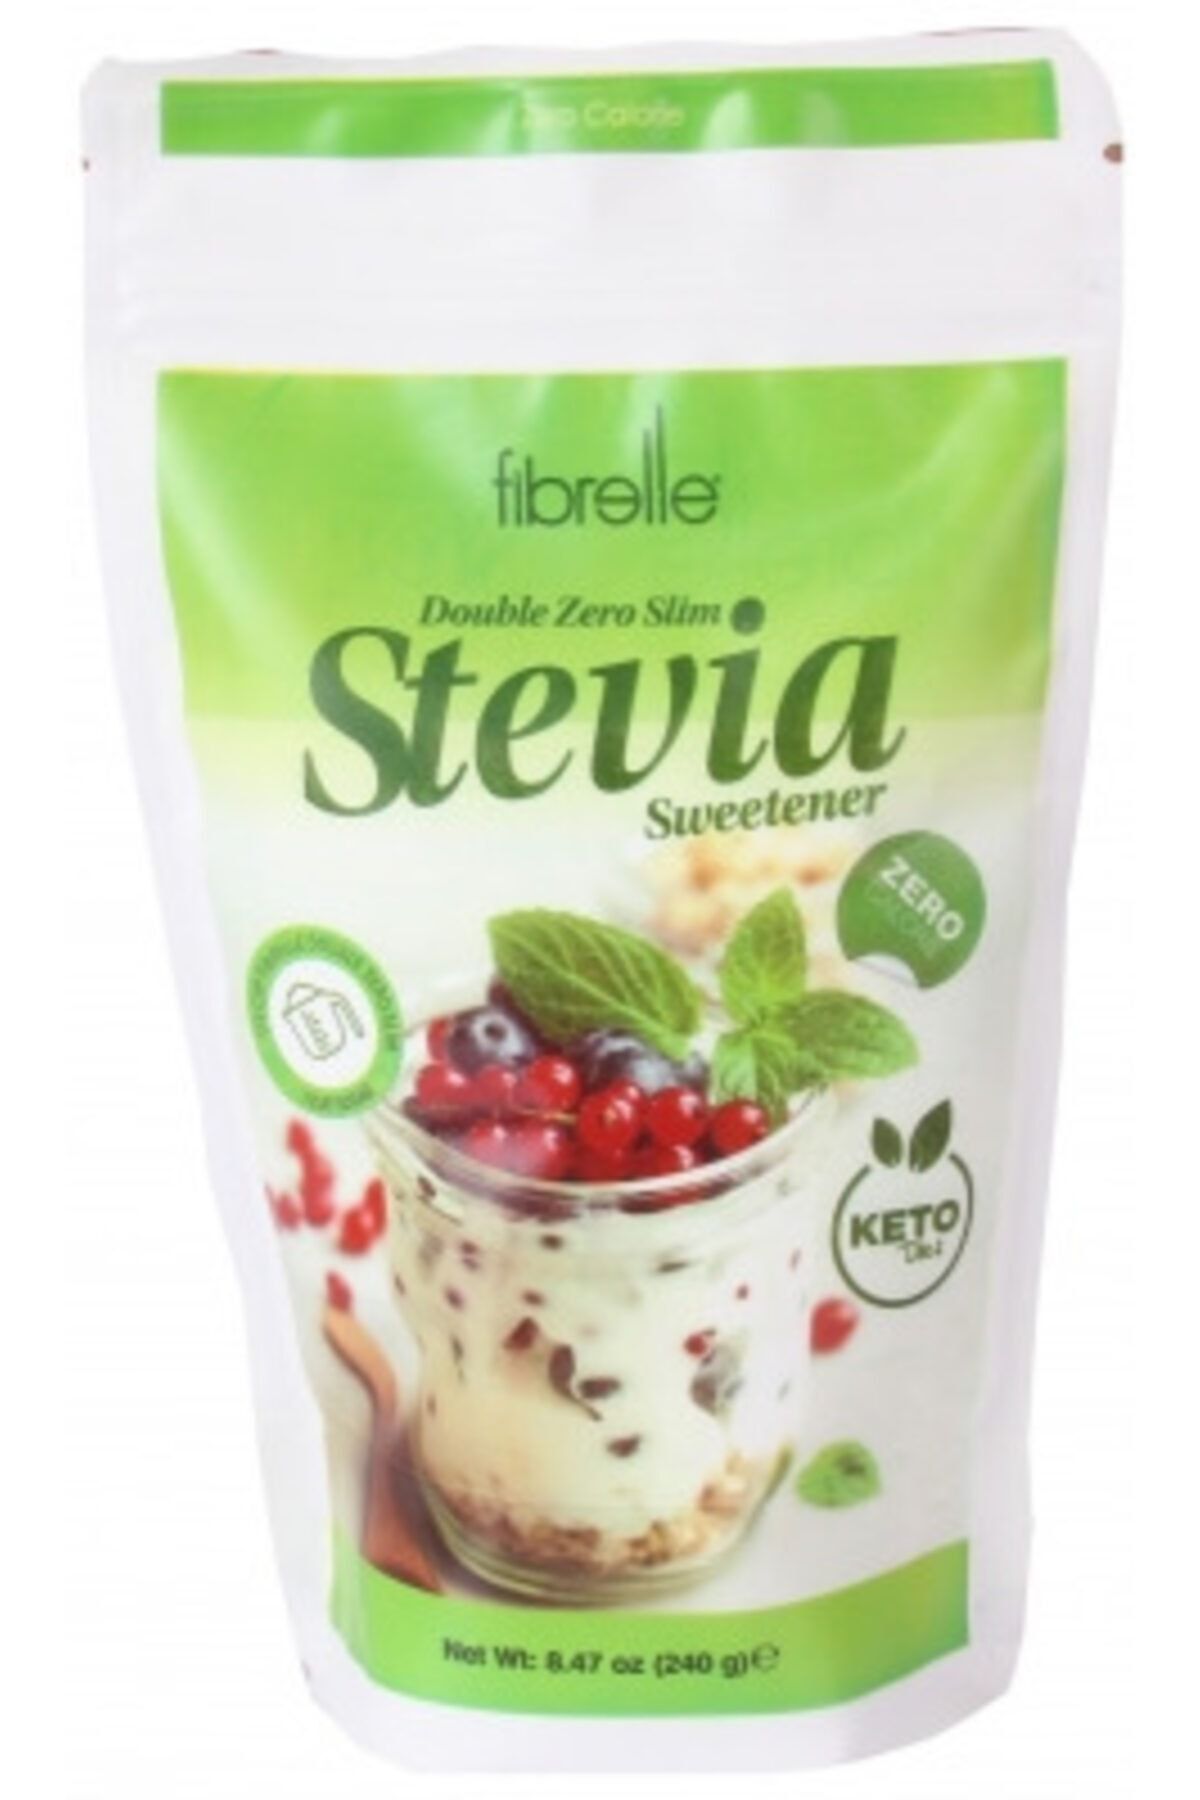 Fibrelle Duble Zero Slim Stevia Sweetener 240 gr